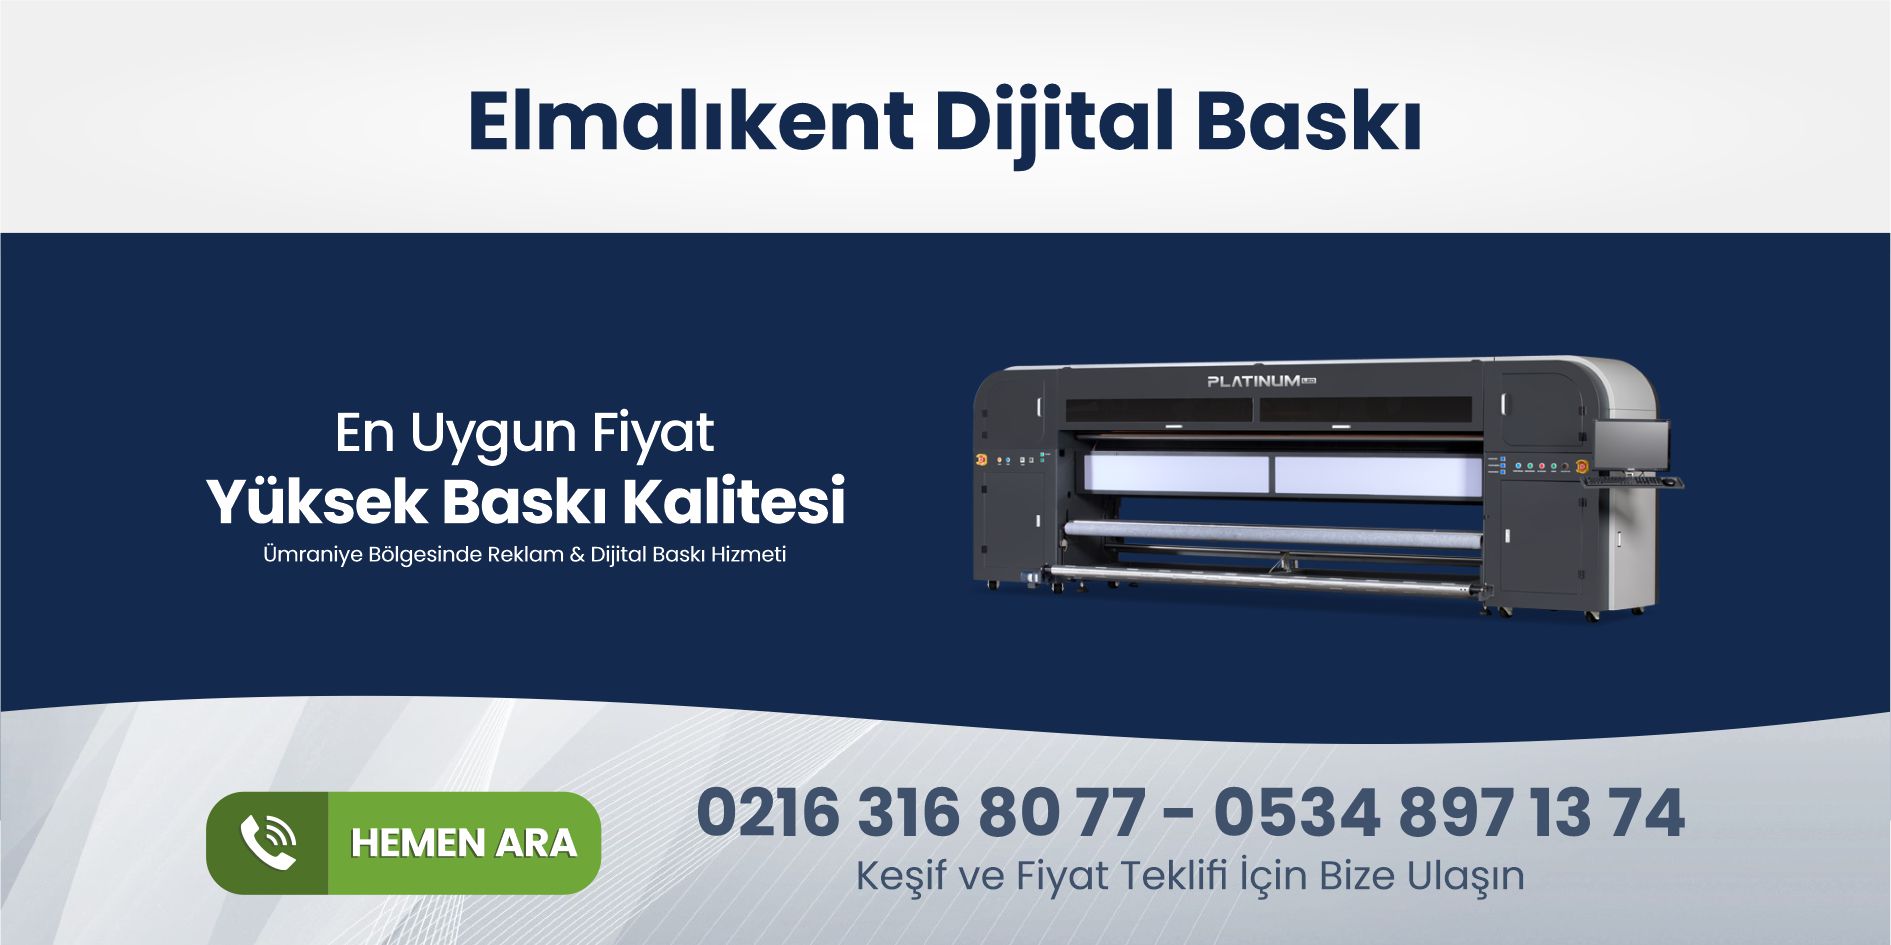 You are currently viewing Elmalıkent Dijital Baskı